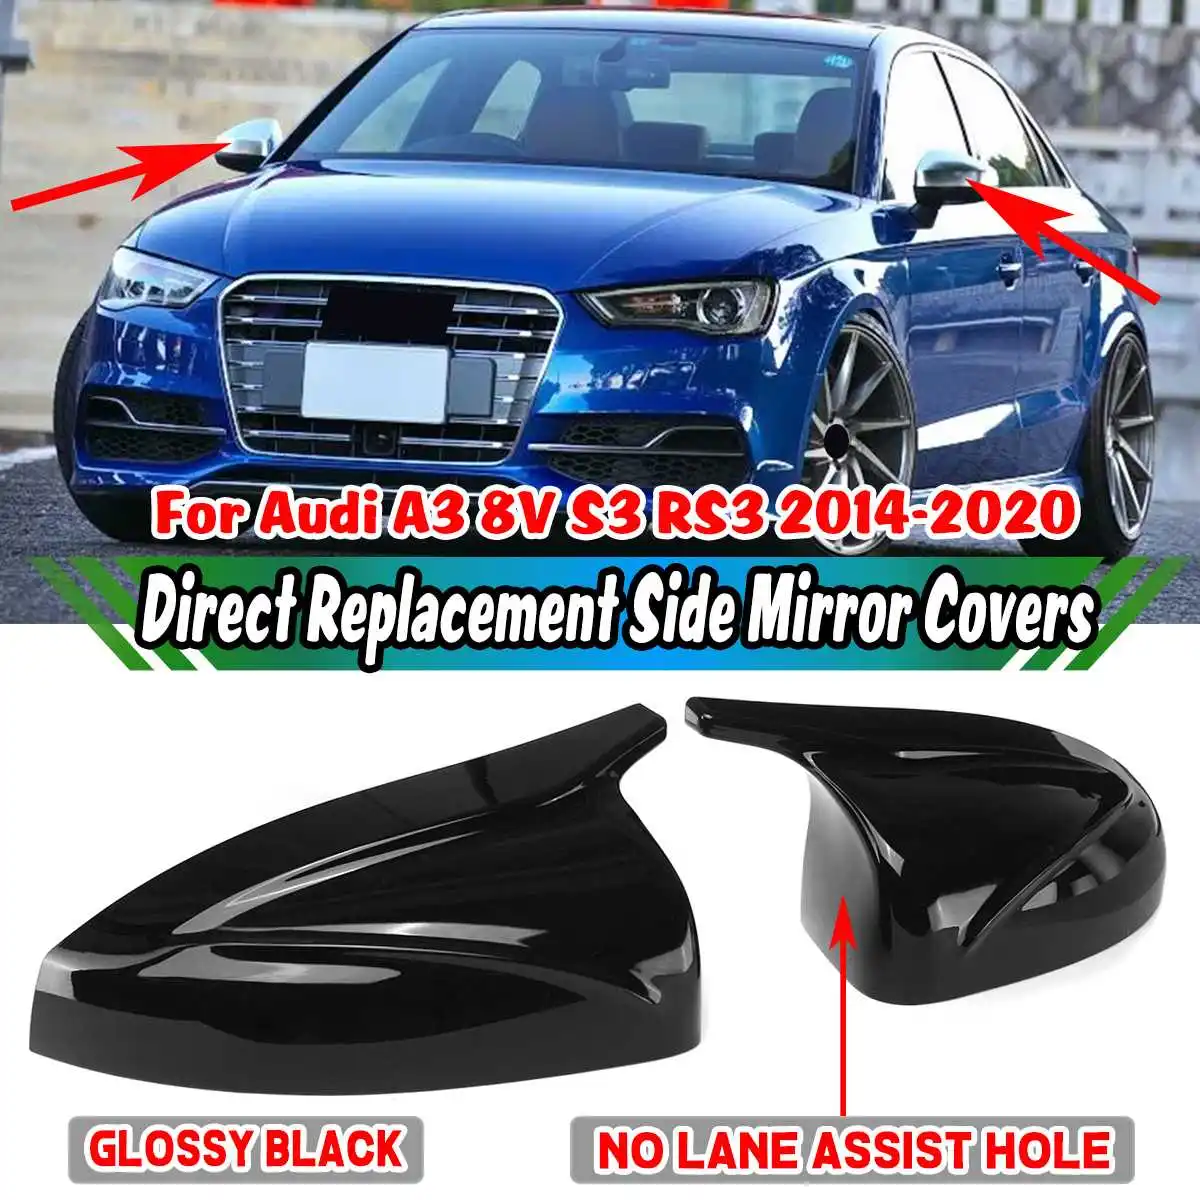 

M Style глянцевые черные автомобильные зеркальные крышки, отделка, замена для Audi A3 8V S3 RS3 2014-2020, вспомогательное отверстие Wihout Lane